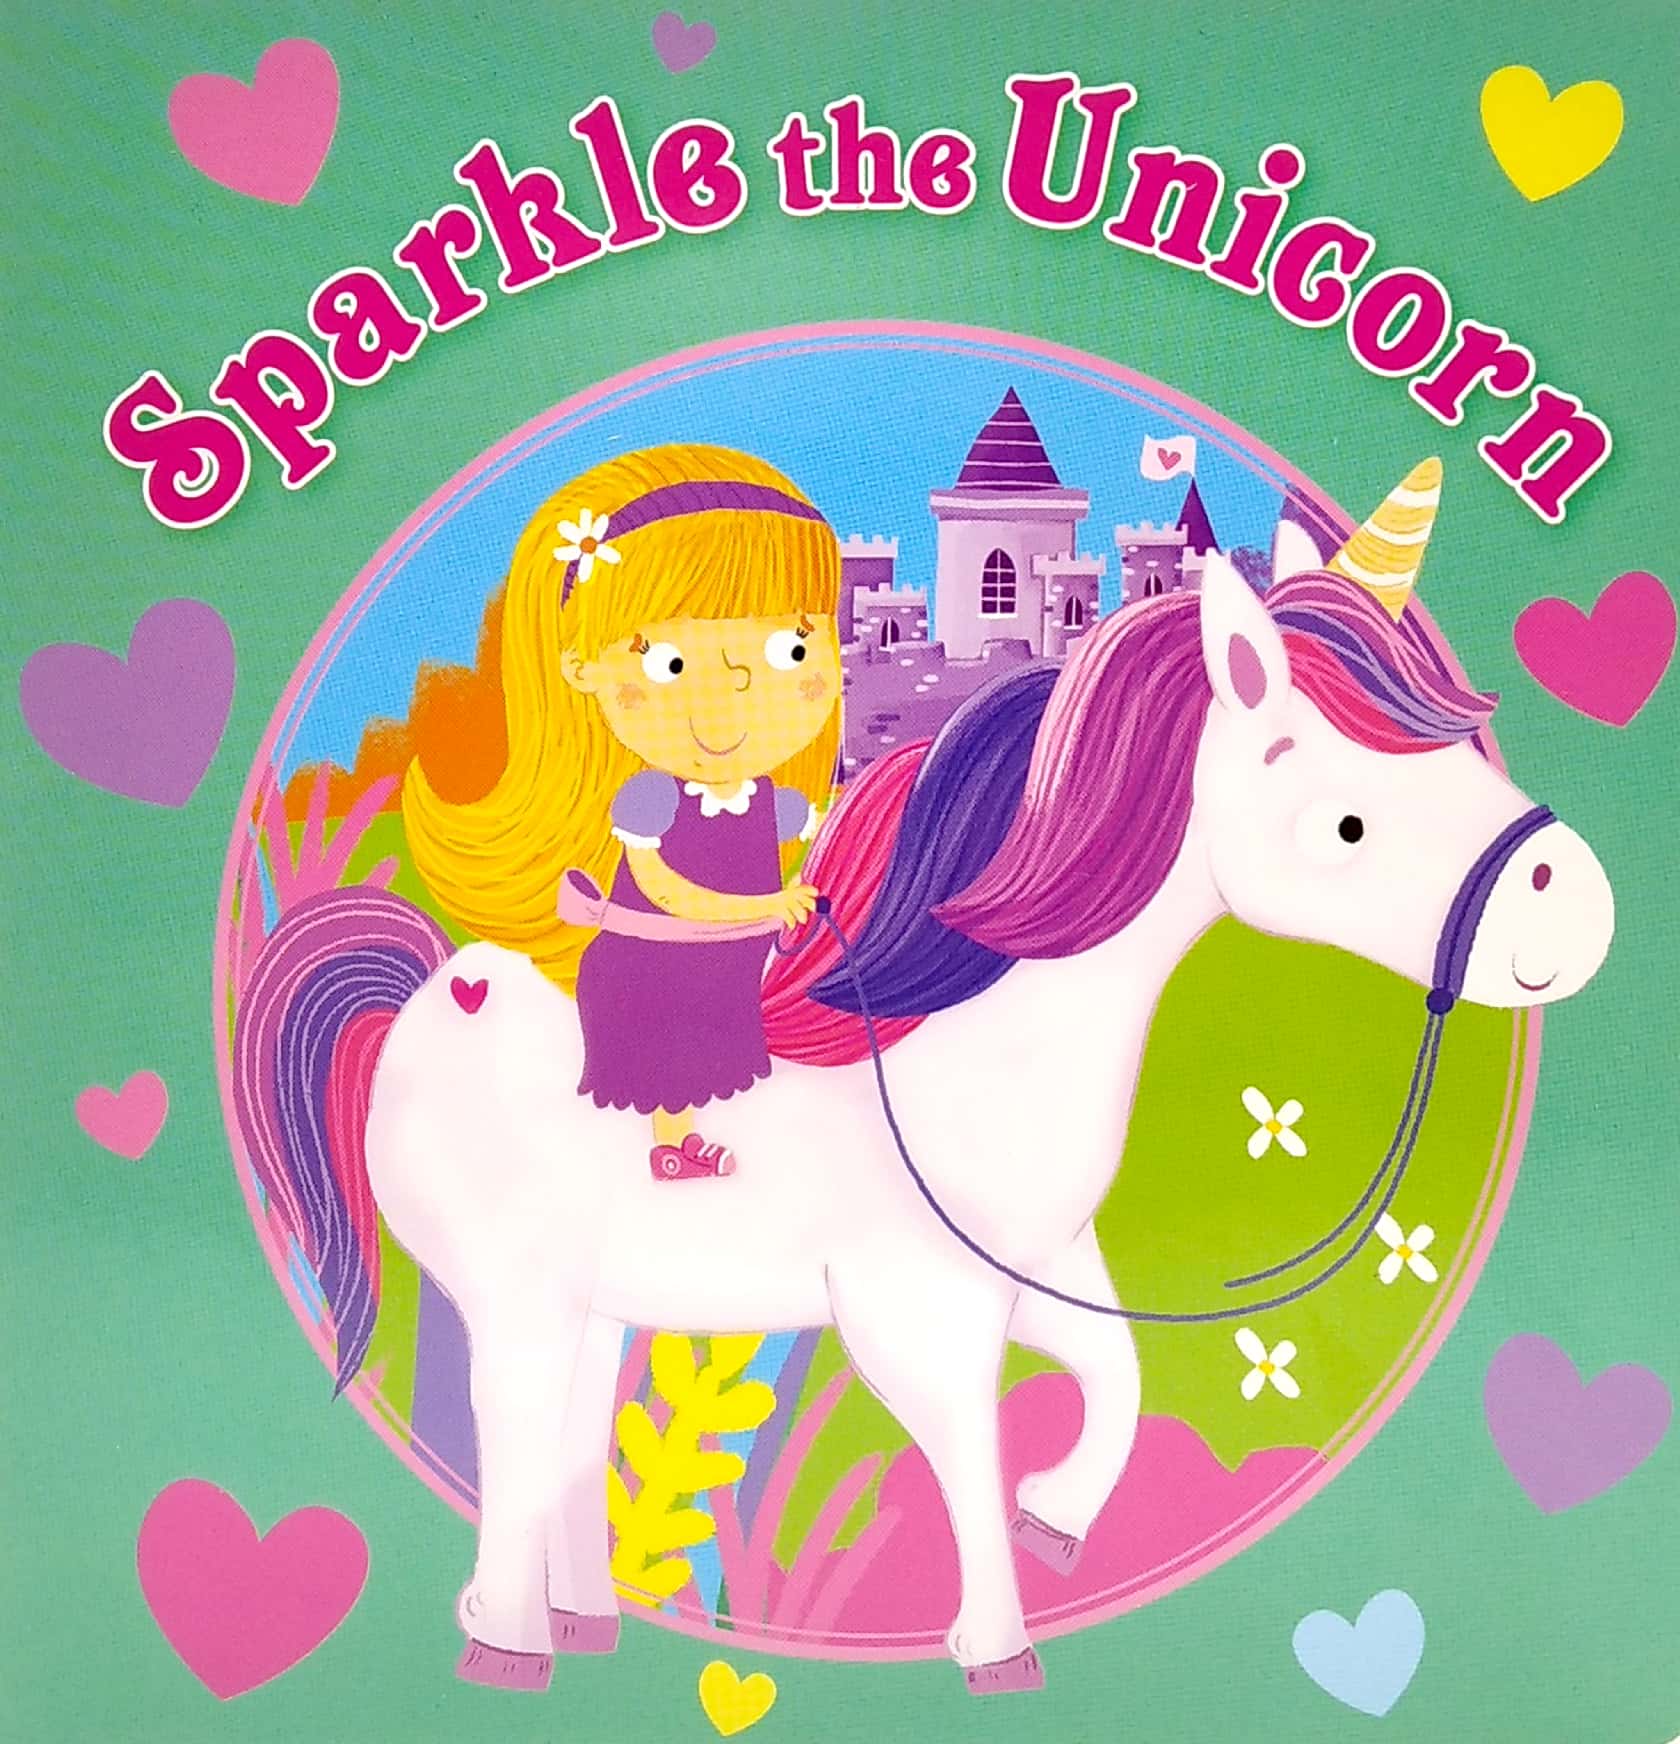 Sparkle the Unicorn- Board Book